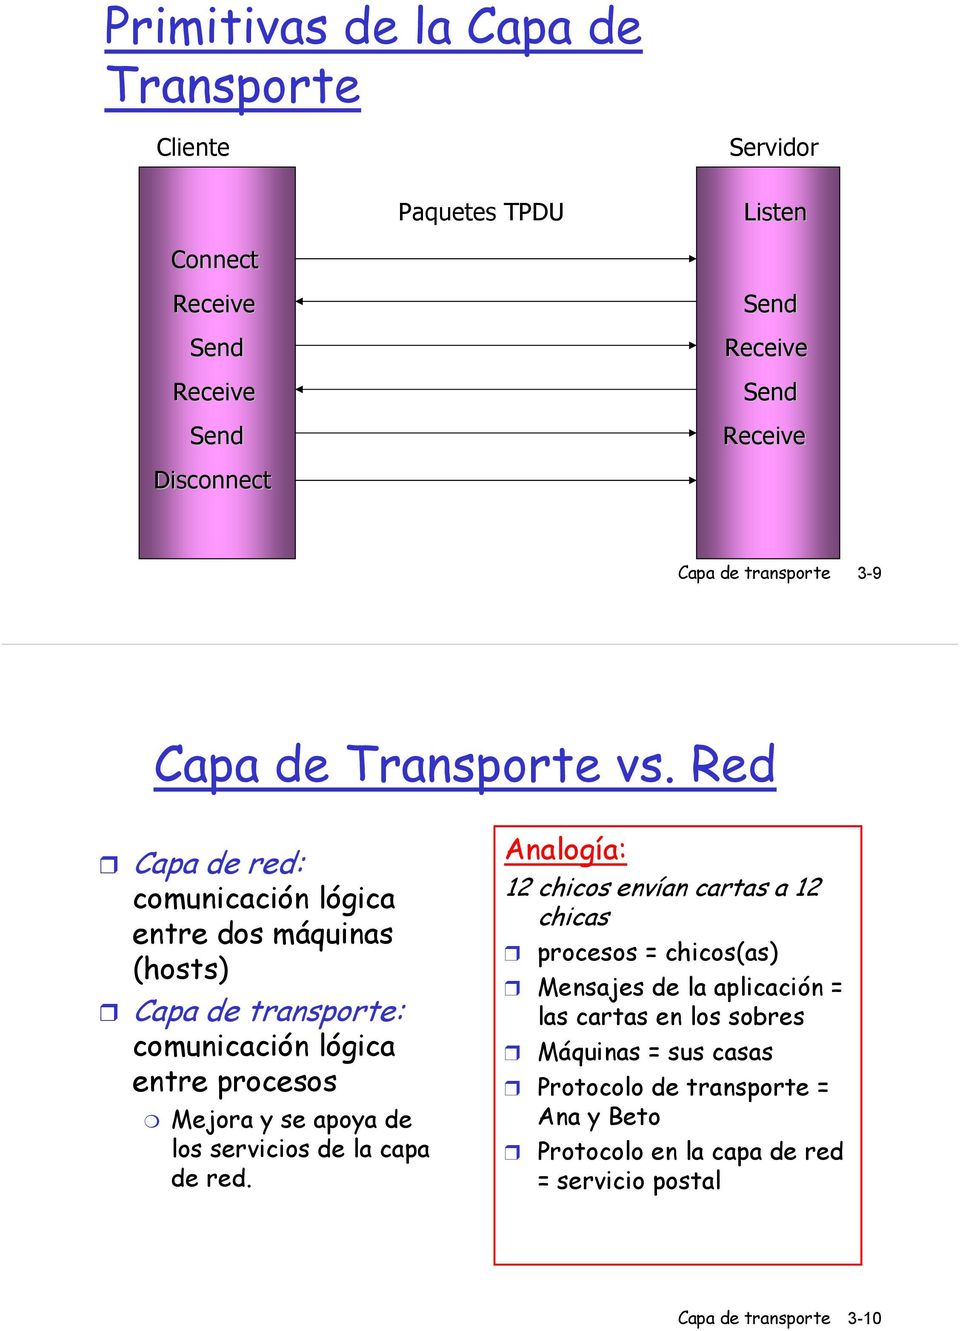 Red Capa de red: comunicación lógica entre dos máquinas (hosts) Capa de transporte: comunicación lógica entre procesos Mejora y se apoya de los